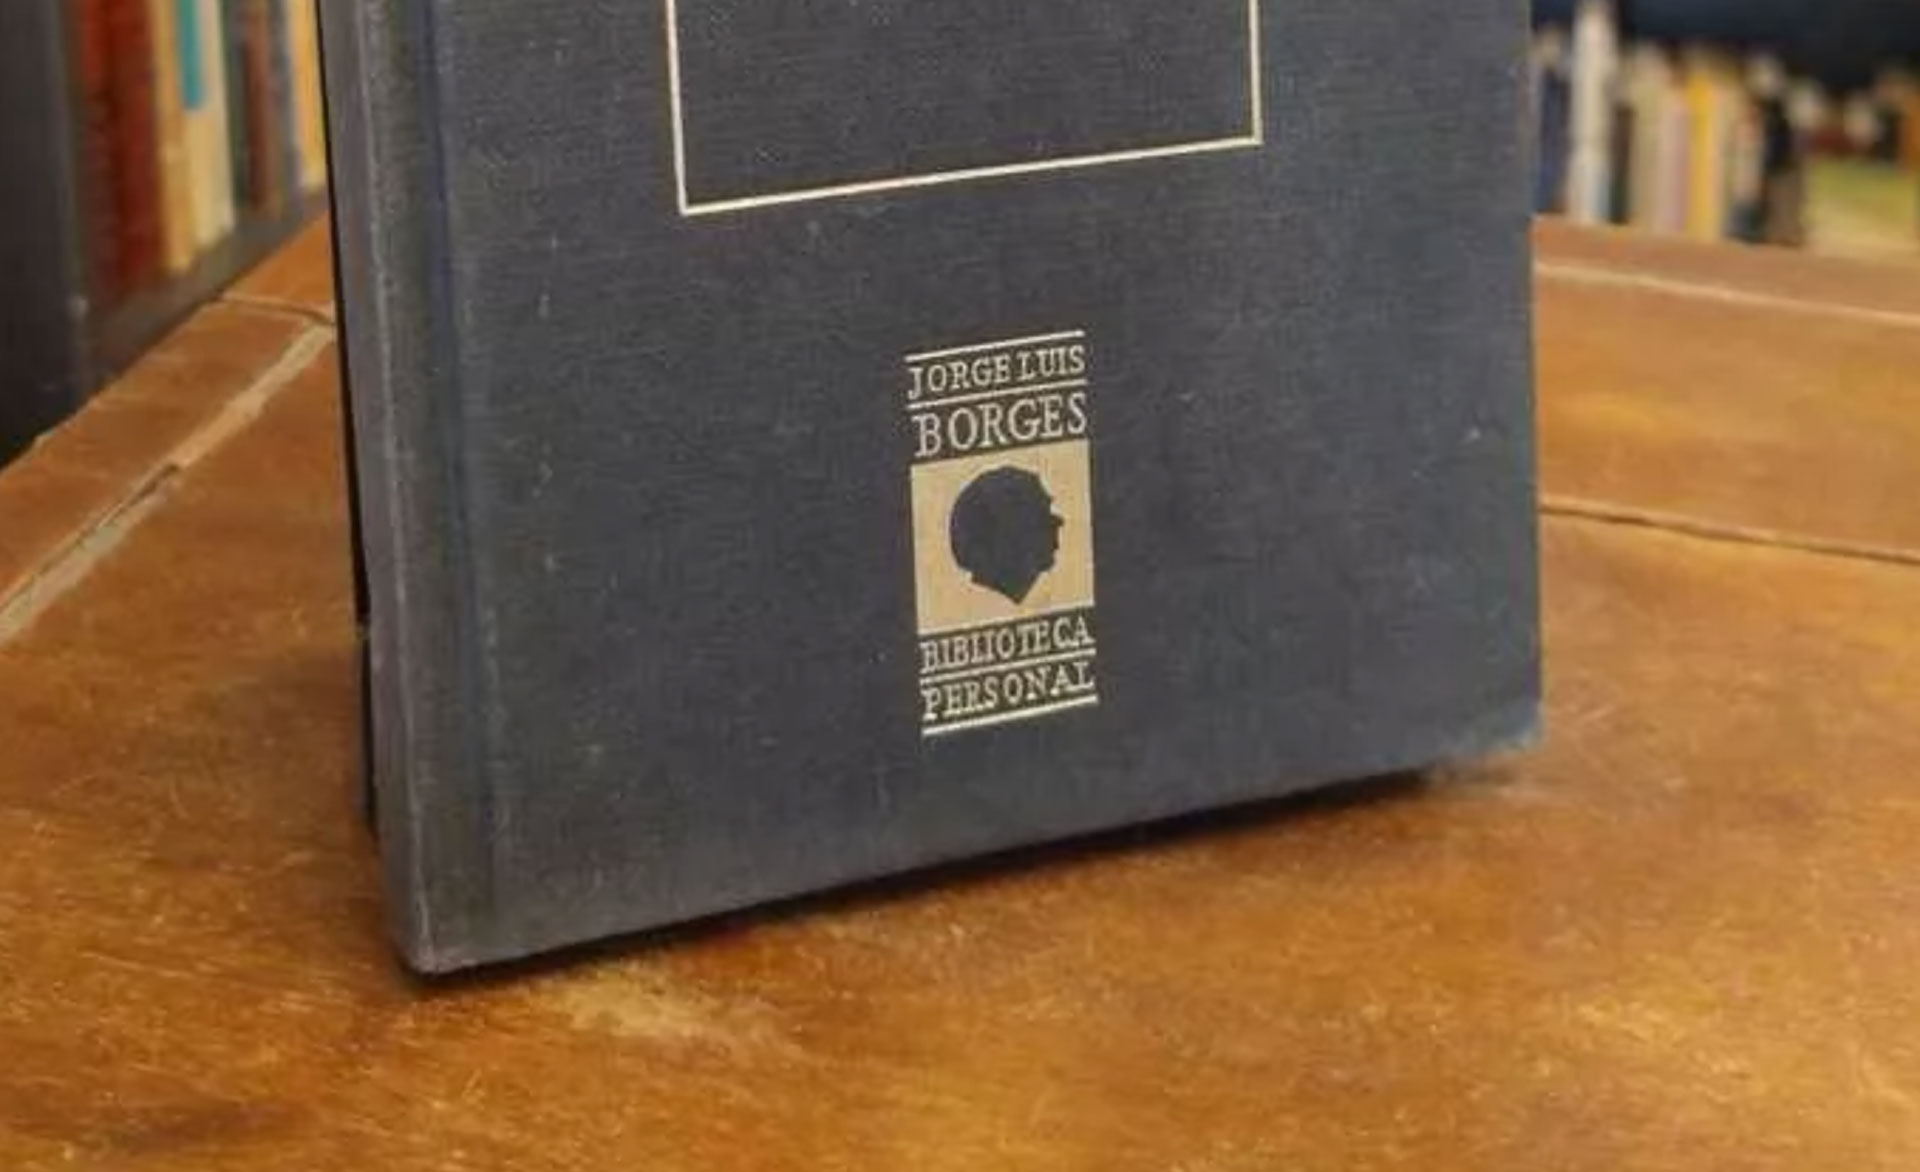 El sello distintivo de la edición de Hyspamerica, con las letras y el perfil de Borges en dorado.